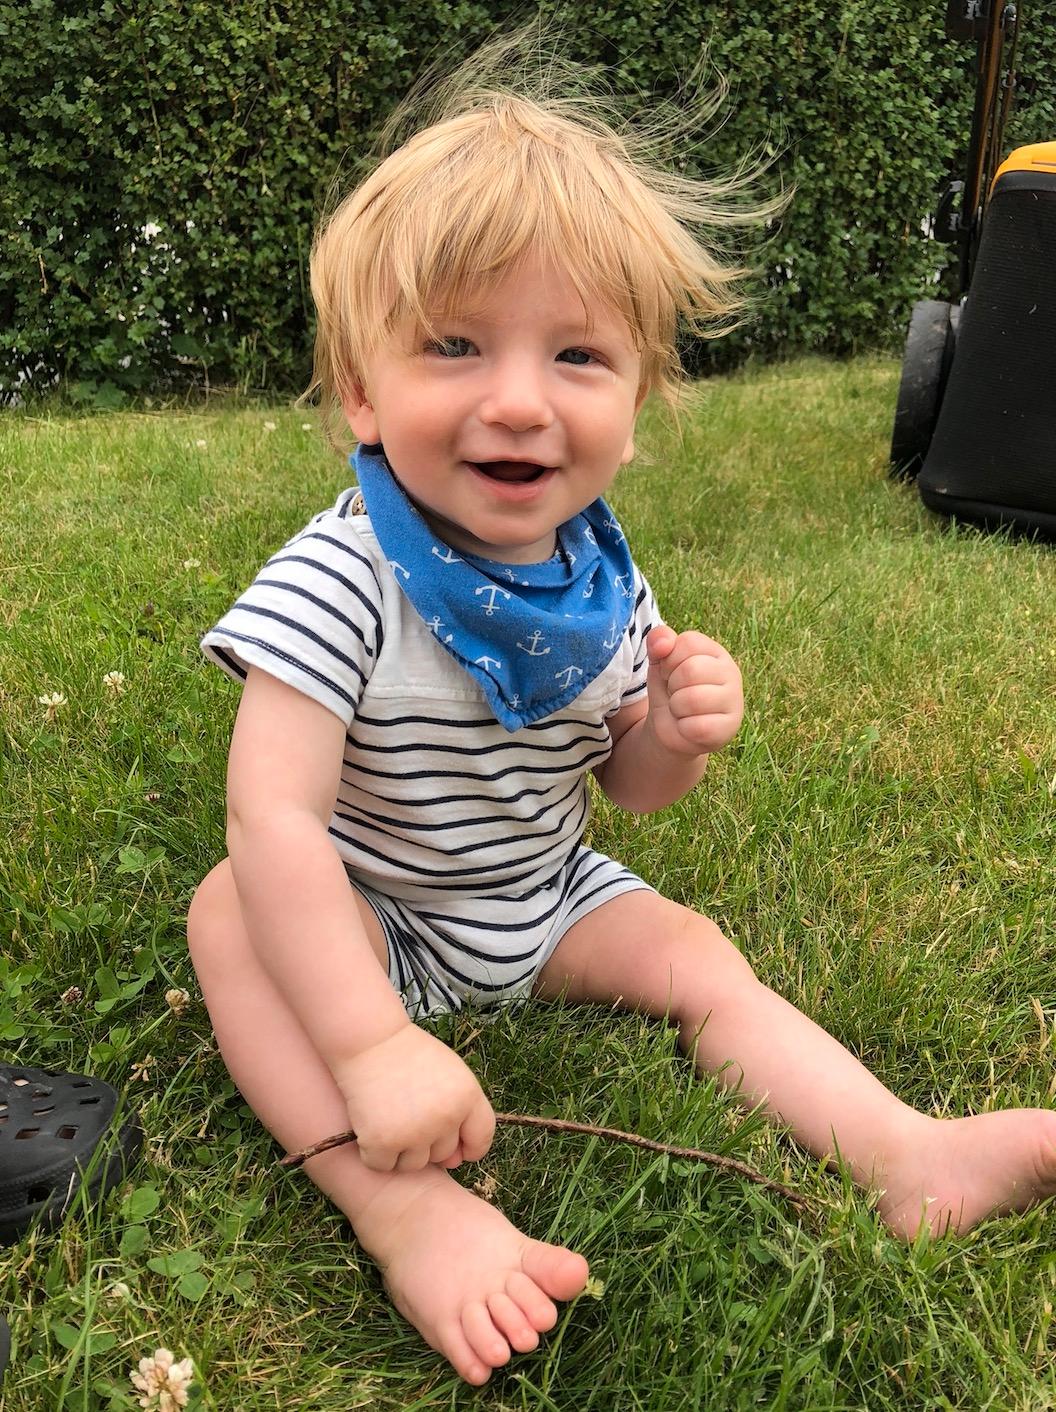 Matheius är 7,5 månad och han har en hel del hår. Bild inskickad av mamman Johanna Öjre Björklund från Trollhättan.